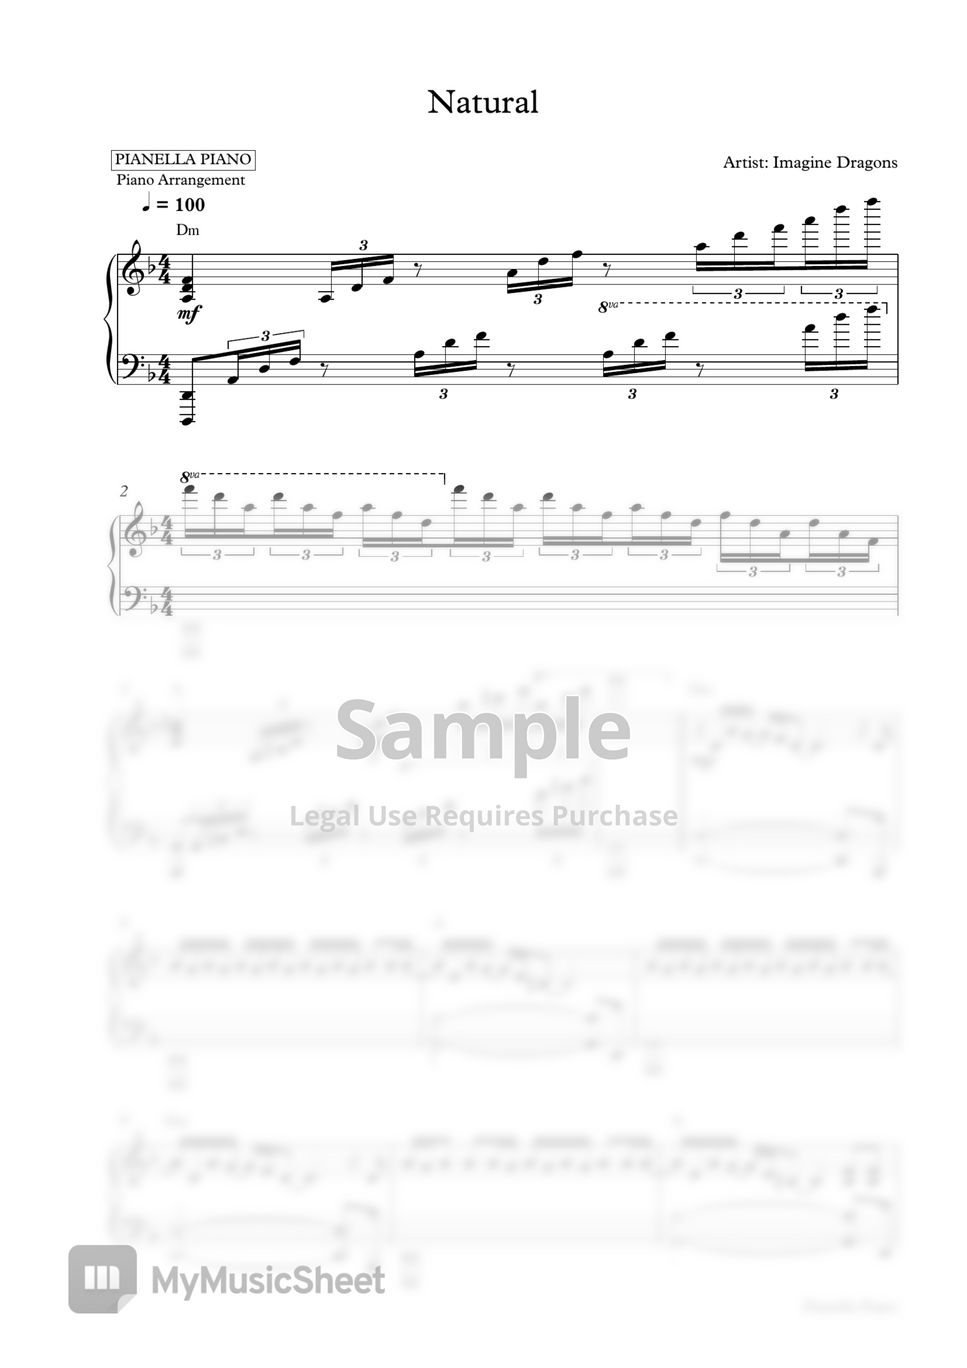 Imagine Dragons - Natural (Piano Sheet) by Pianella Piano